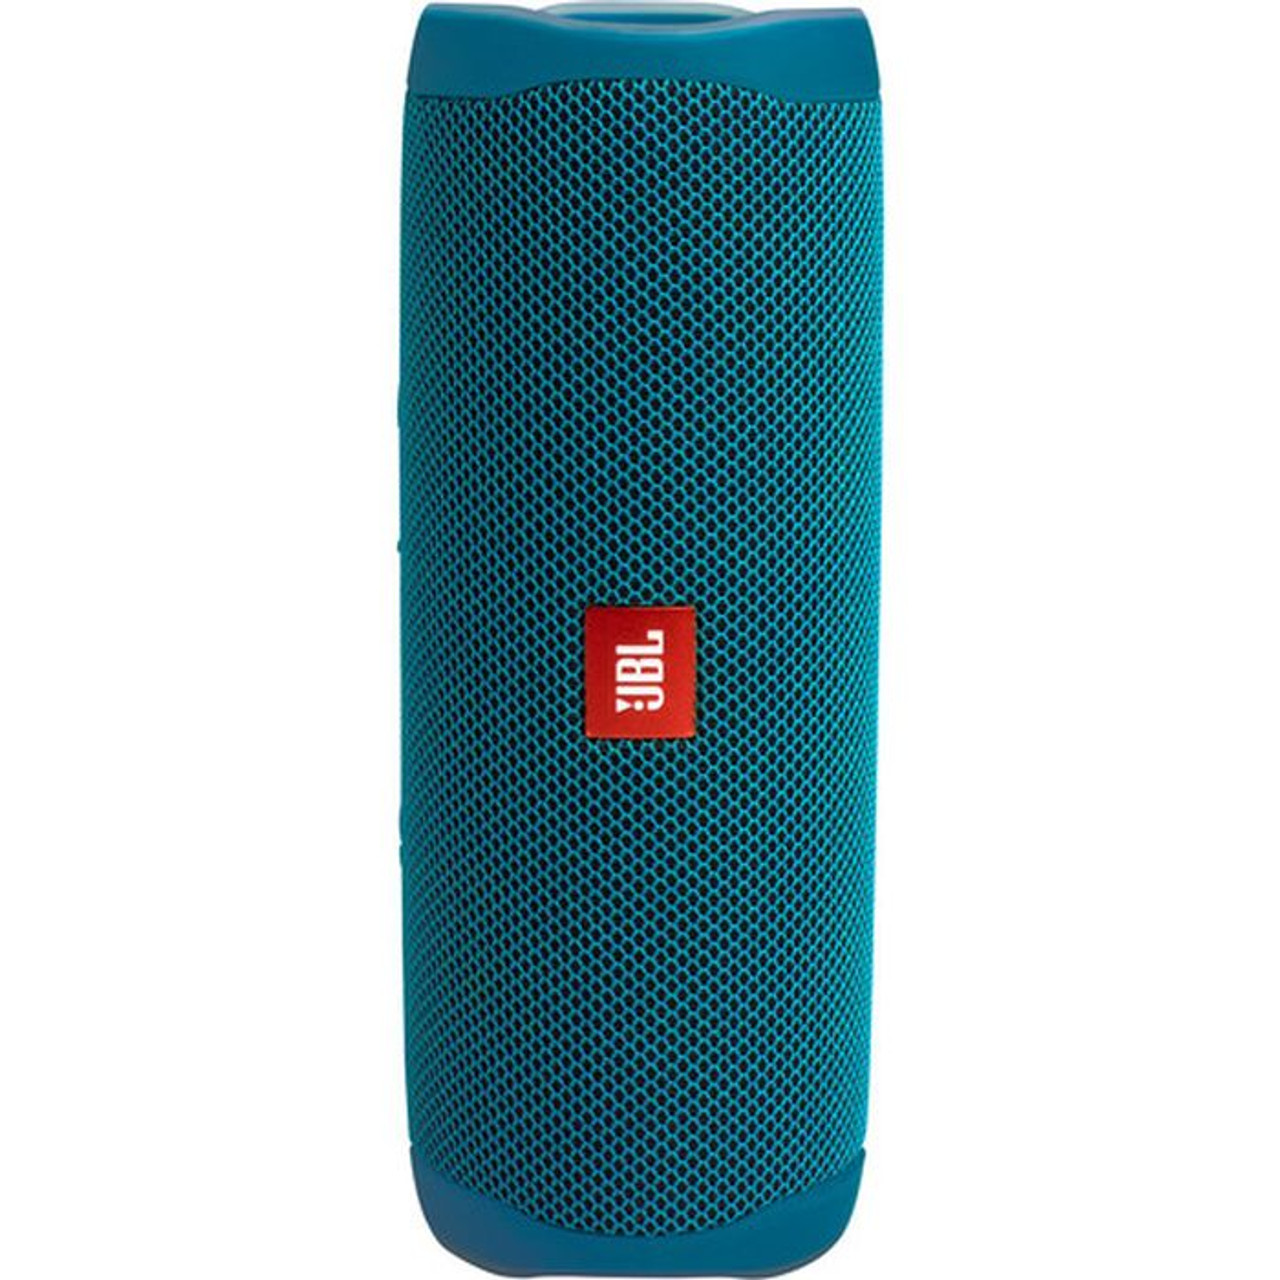 Flip Parade Refurbished Eco 5 Bluetooth JBL Blue Speaker -Certified - Deal JBLFLIP5ECOBLUAM-Z